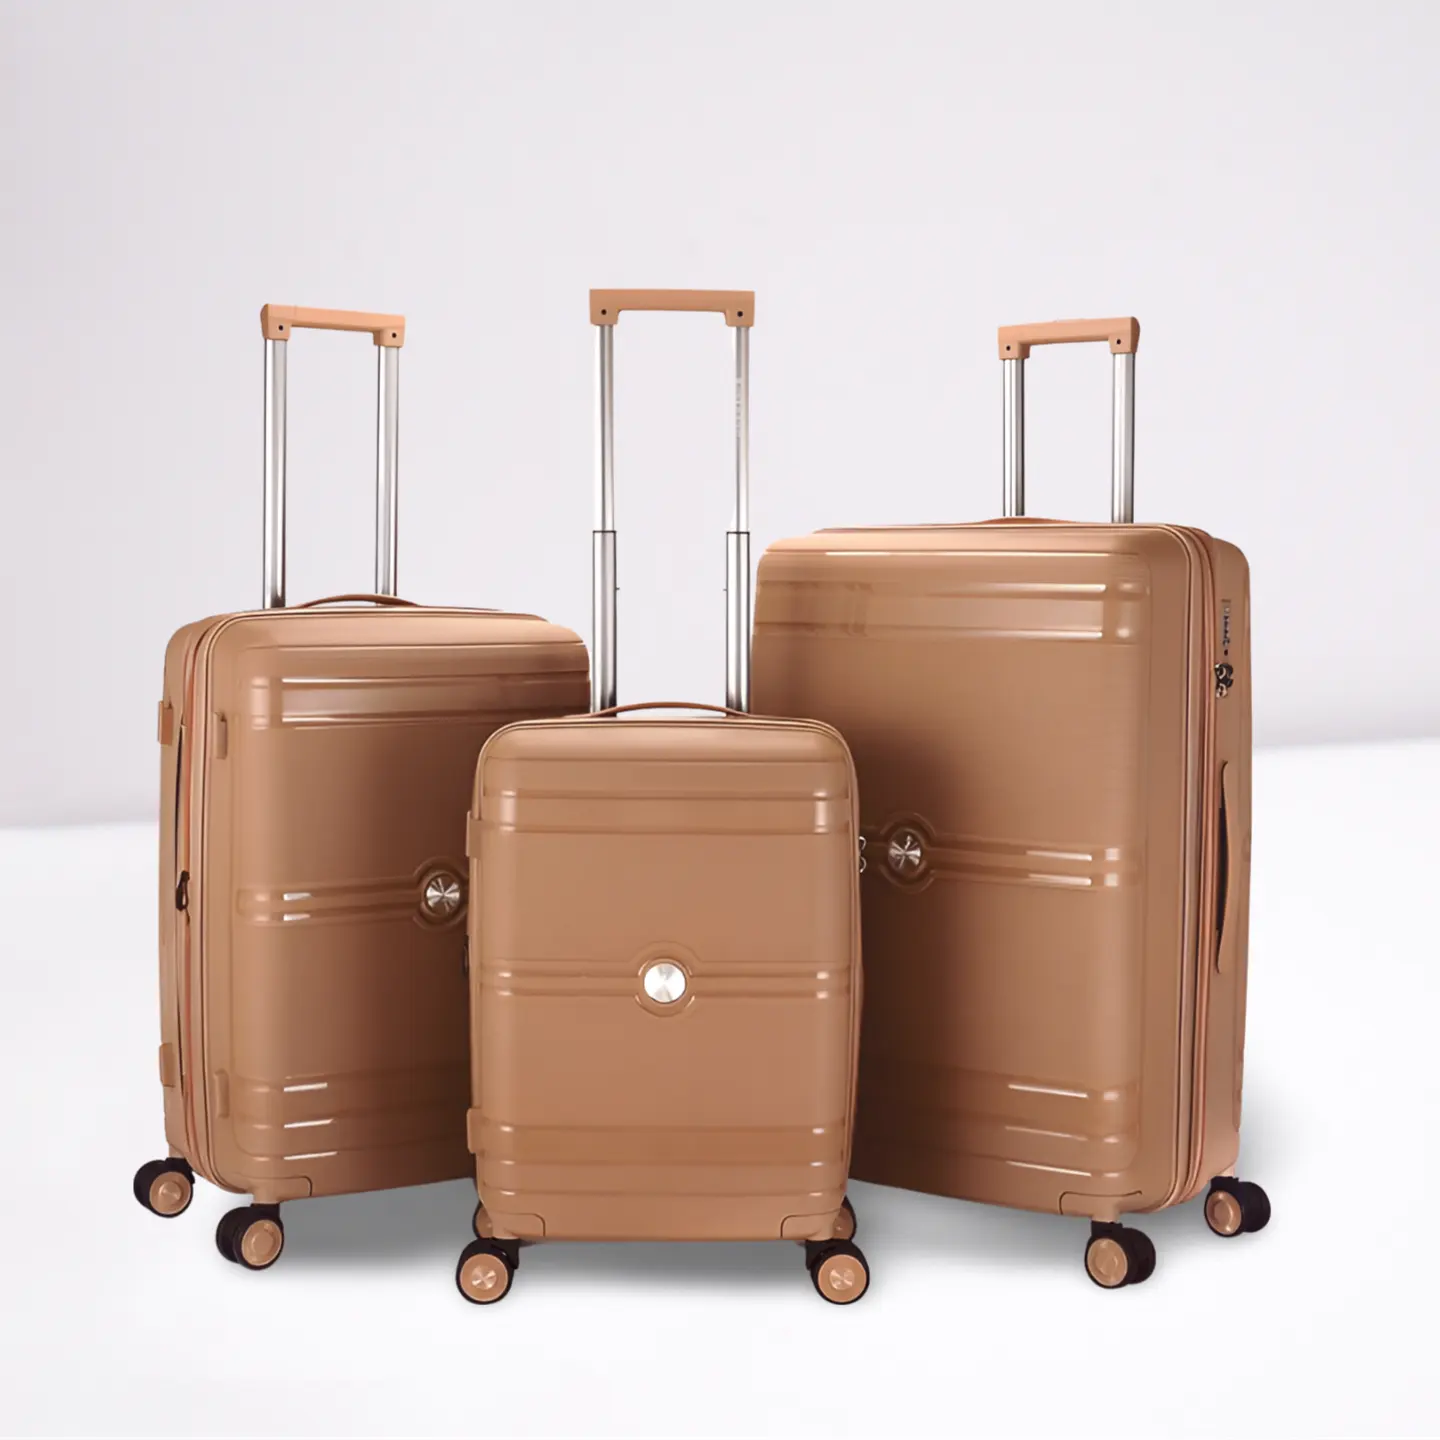 Kırılmaz PP malzeme fabrika fiyat sert kabuklu valiz seyahat çantası setleri 20 24 28 inç tekerlekler üzerinde haddeleme bagaj üreticisi